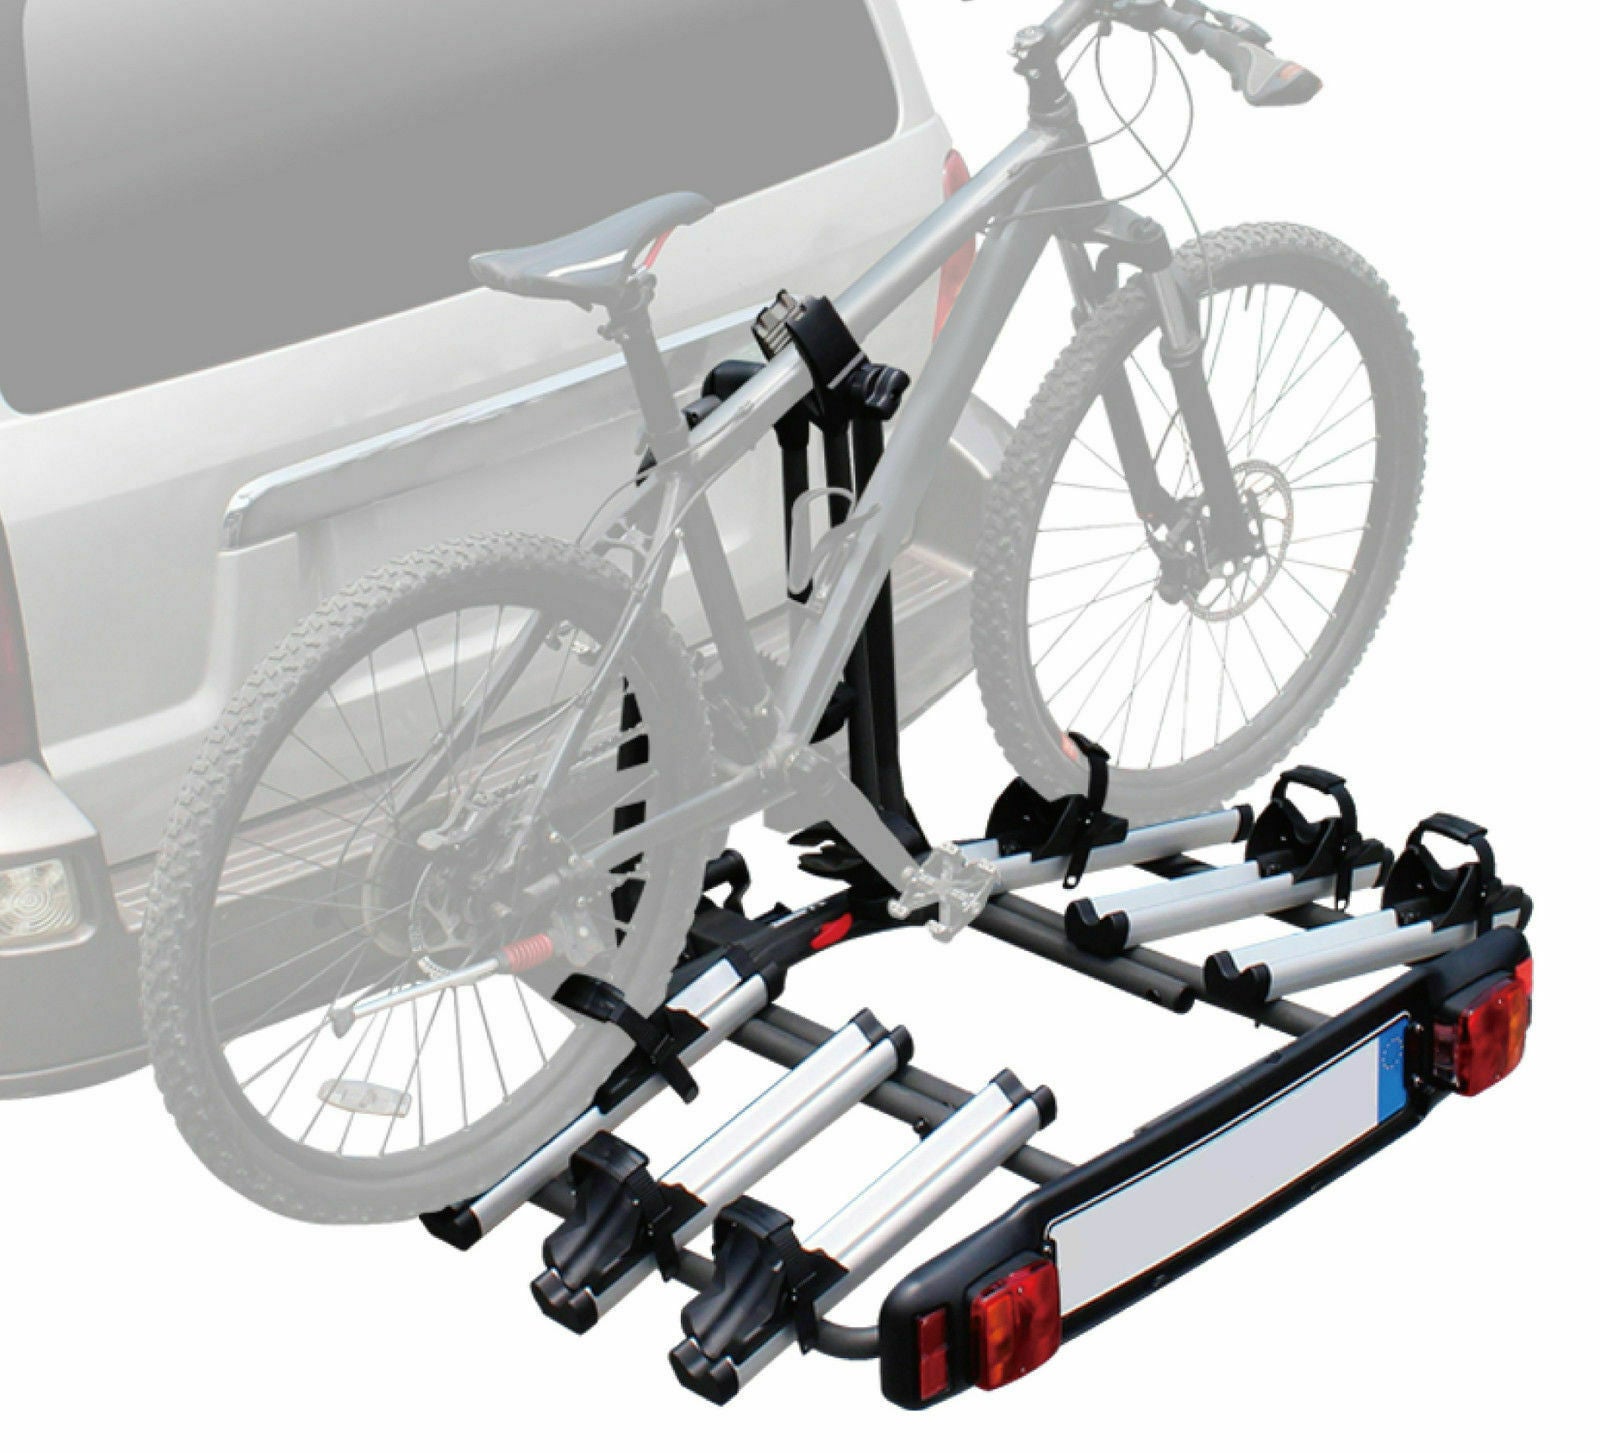 3 bike rack for travel trailer